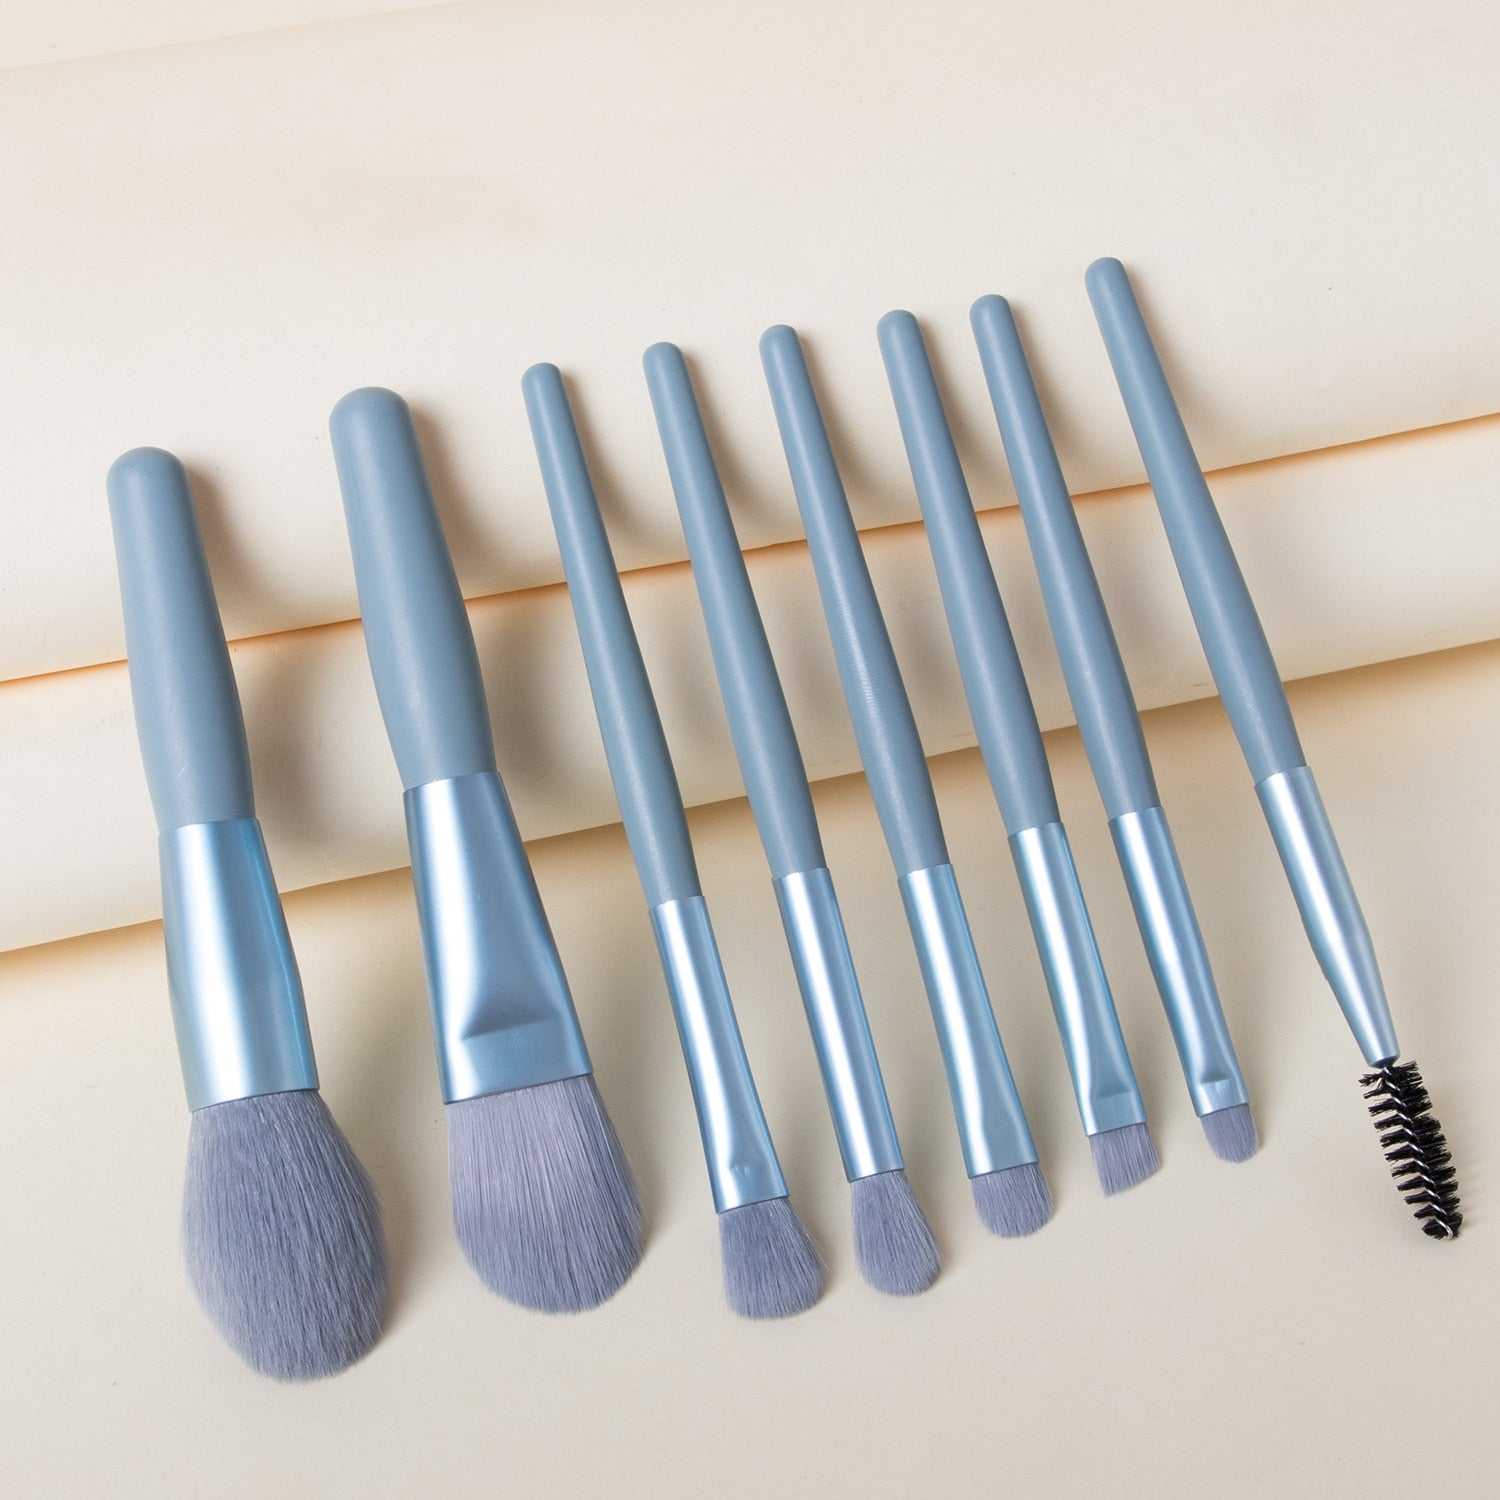 8-Piece Makeup Brush Set - Shop with Ameera